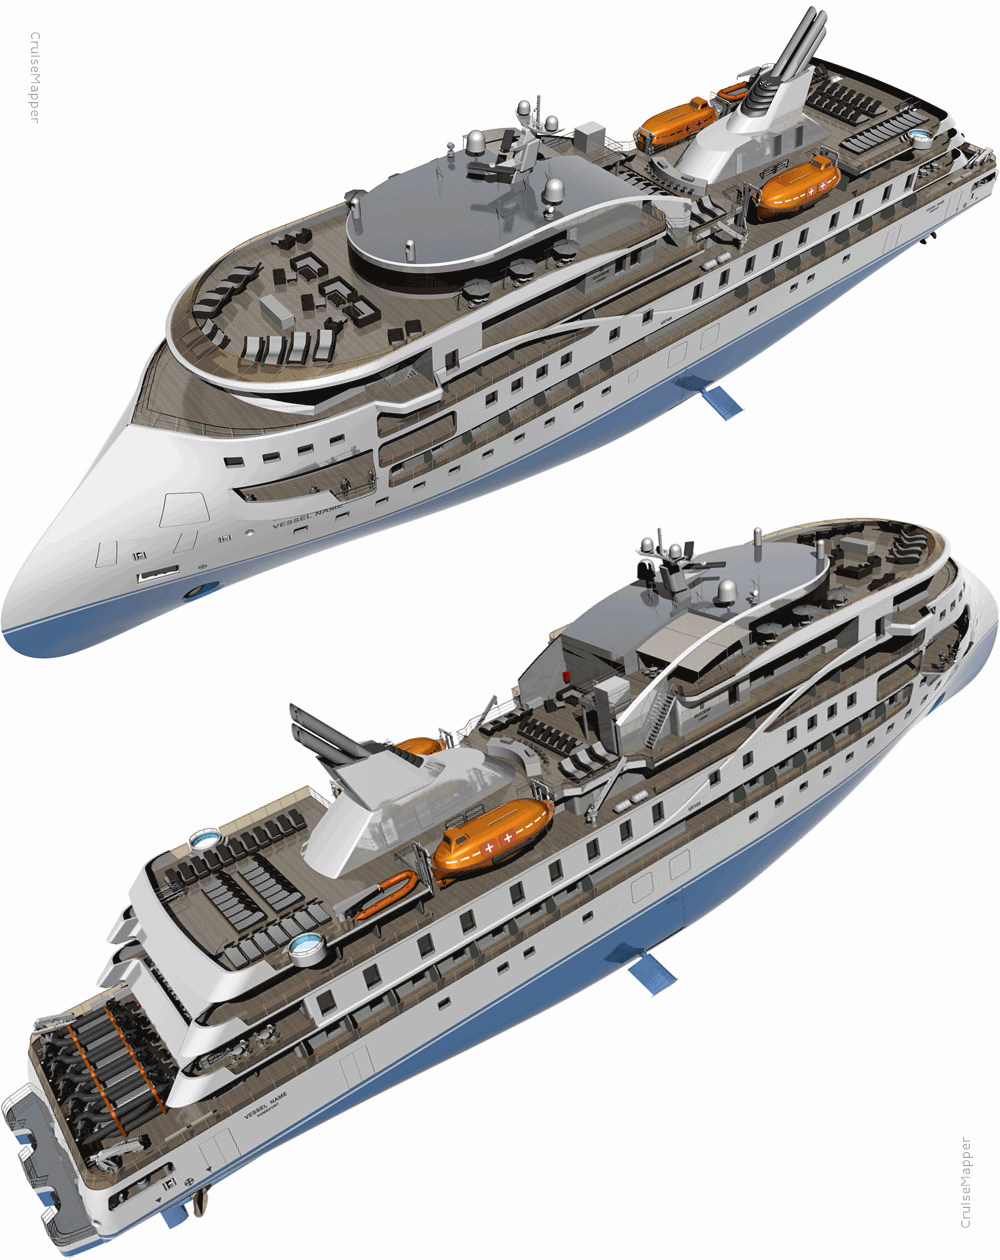 SunStone cruise ship design (ULSTEIN CX103) World-Class